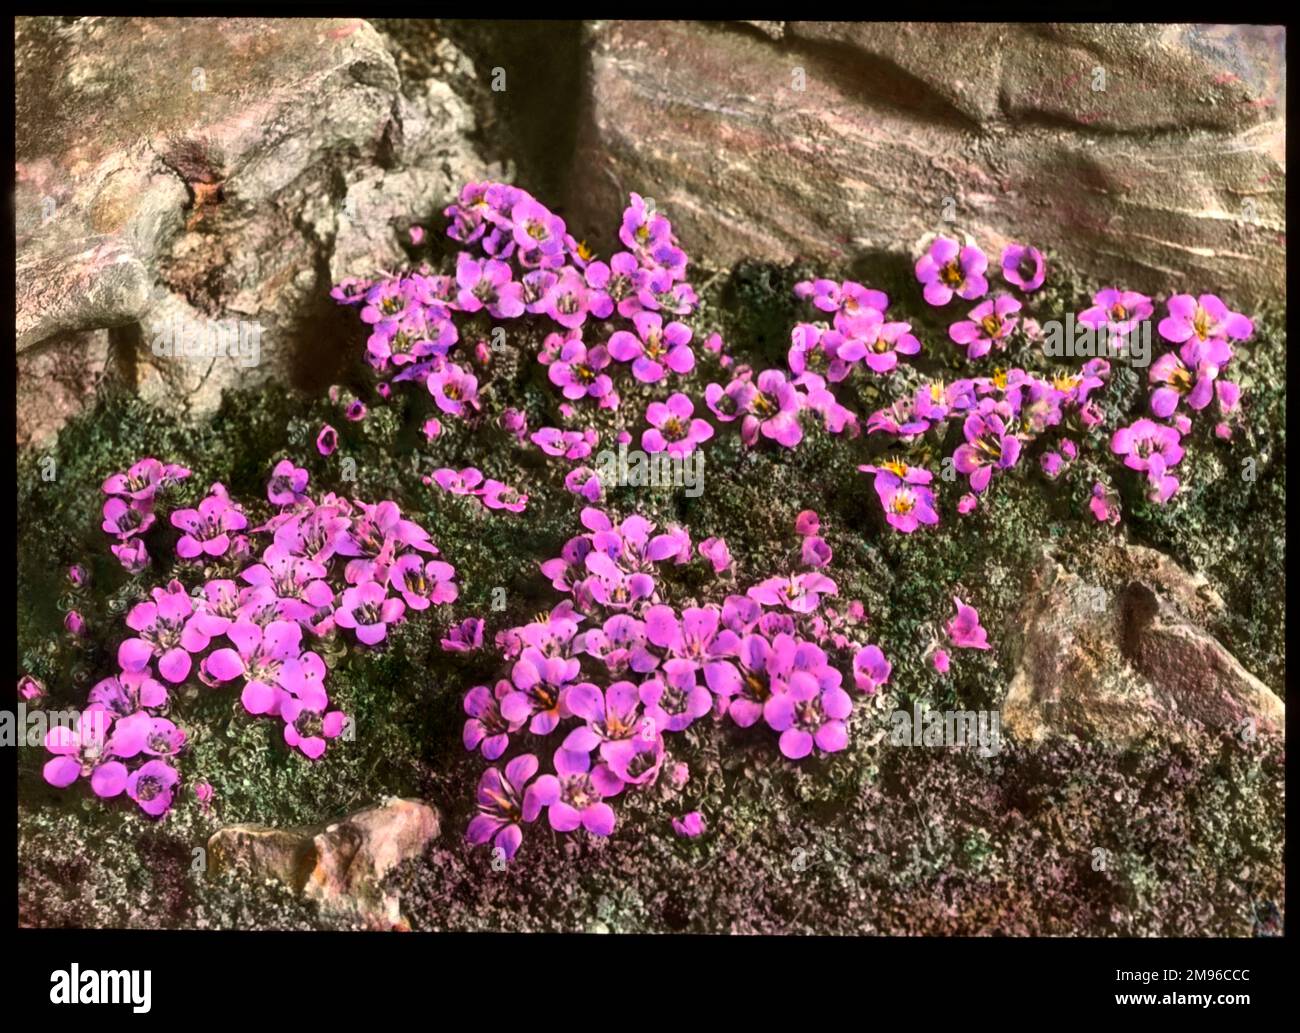 Saxifraga oppositifolia, eine blühende Pflanze der Familie der Saxifragaceae (gemeinhin als Saxifragen oder Steinbrecher bekannt, da sie in den Rissen zwischen den Felsen wachsen können). Hier wachsen sie in einer felsigen Umgebung. Es hat lila Blumen. Stockfoto